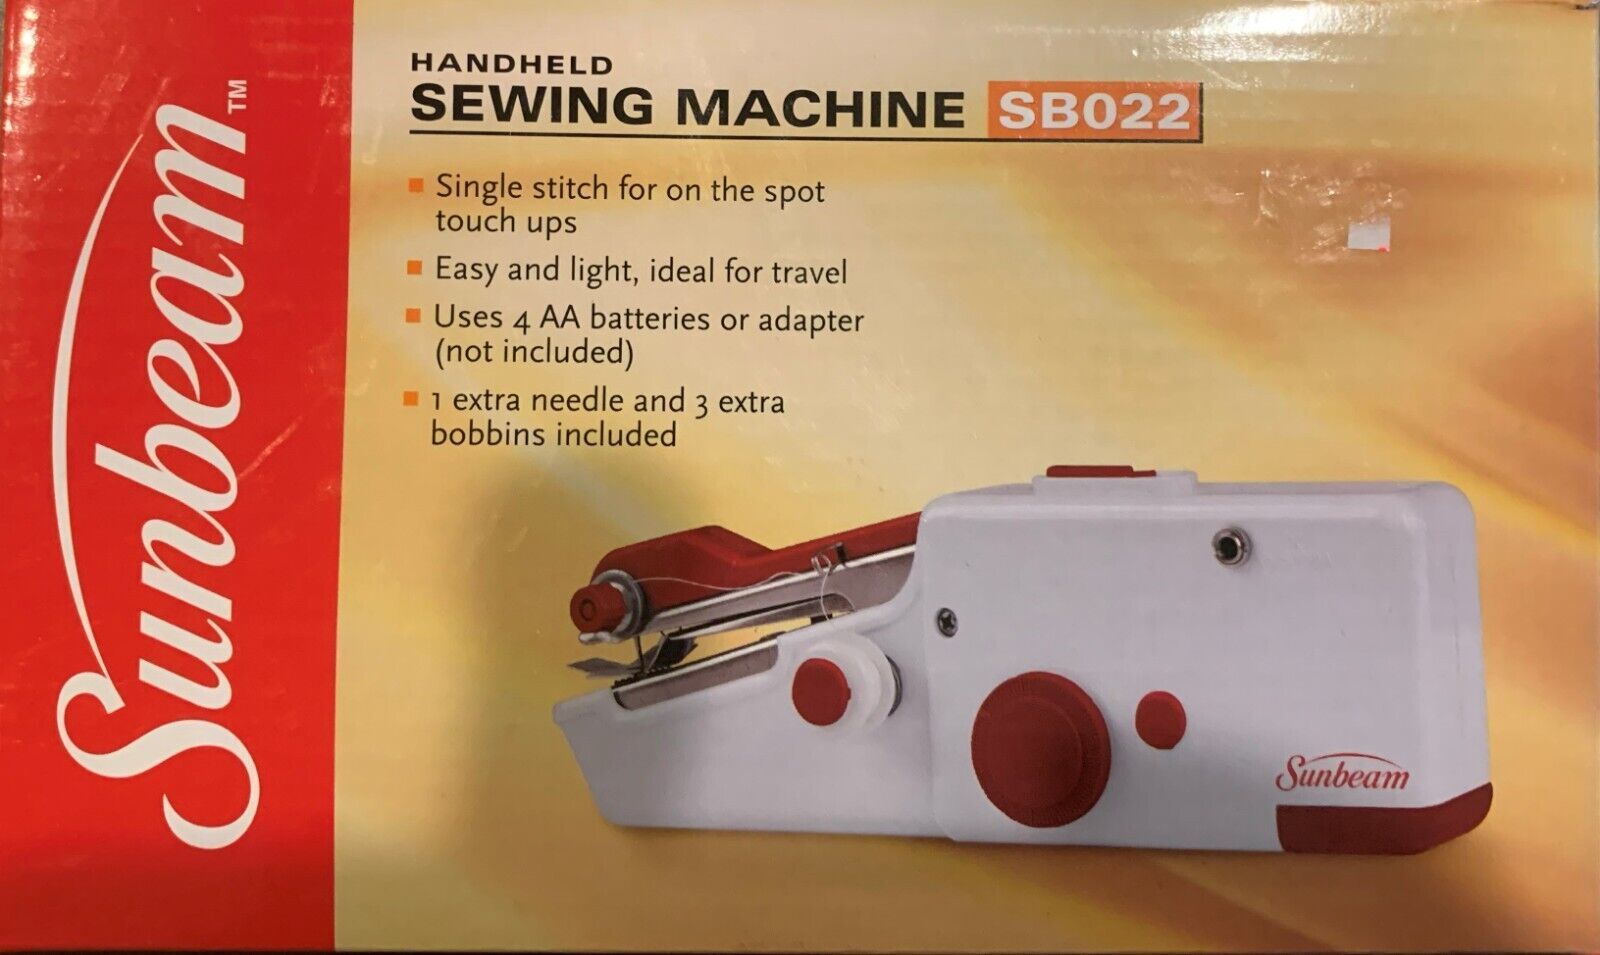 New Sunbeam Portable Cordless Handheld Sewing Machine sb022 - $15.83